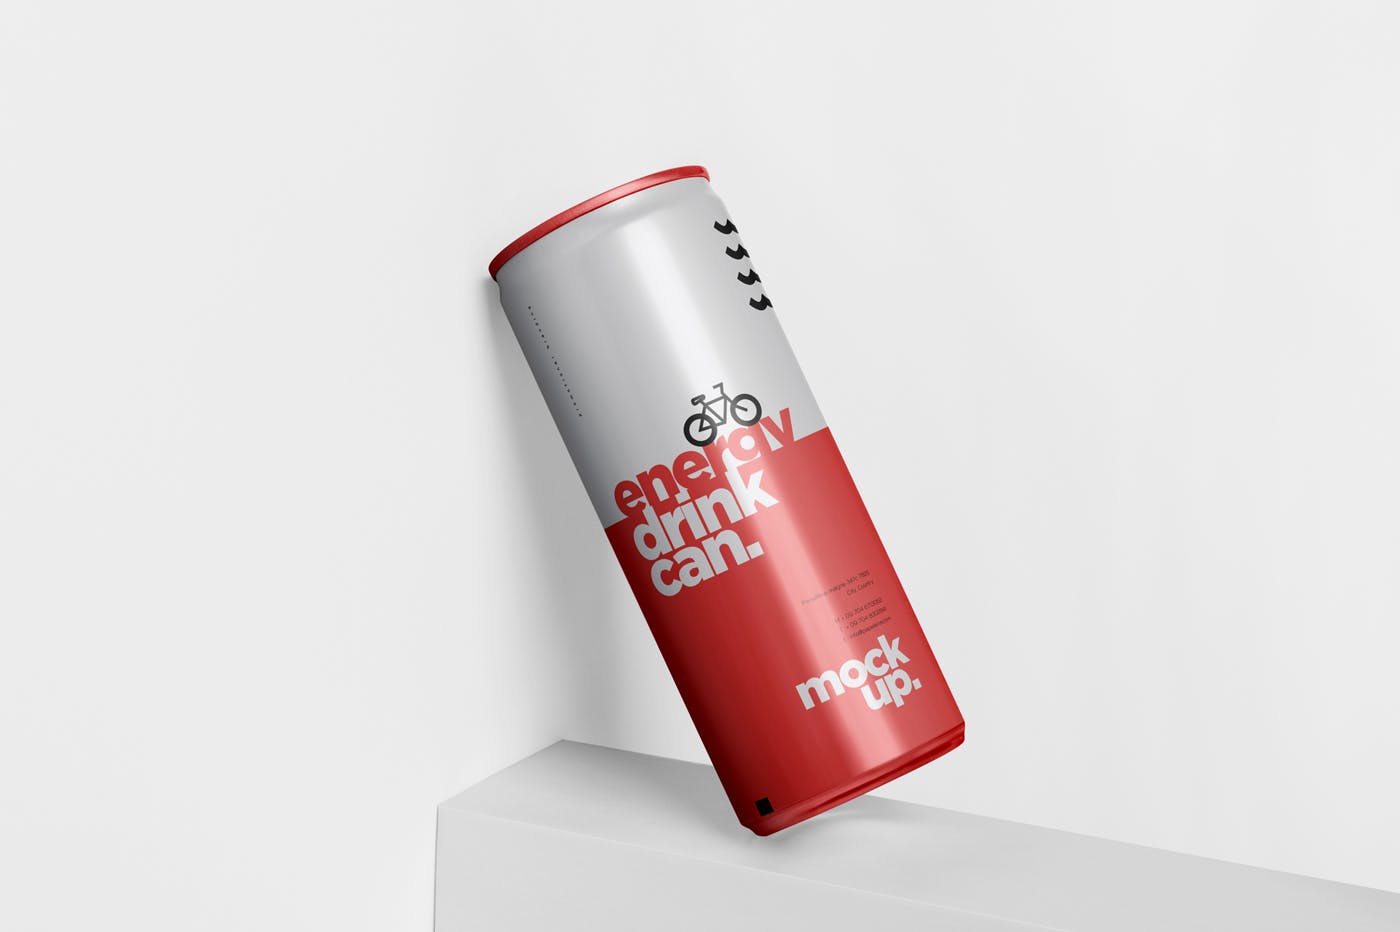 能量饮料易拉罐罐头外观设计16图库精选模板 Energy Drink Can Mock-Up – 250 ml插图(3)